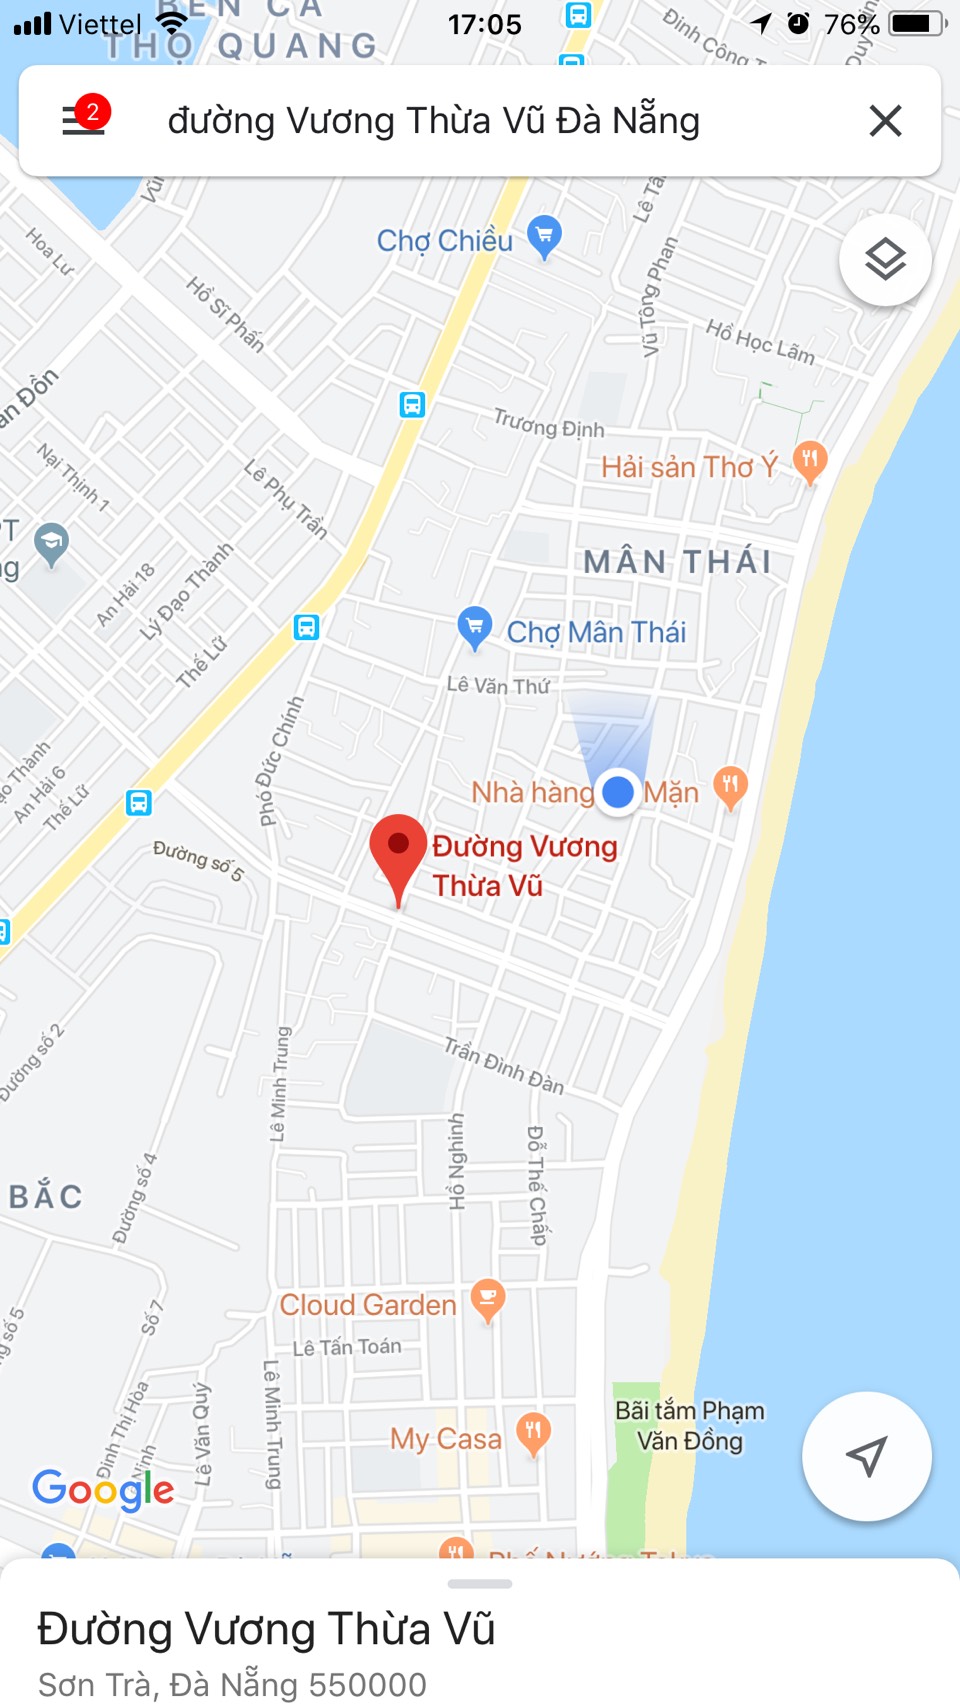 Bán gấp giá rẻ 2 lô liền đất đường Ngô Quyền gần ngã tư Vương Thừa Vũ đi thẳng ra bãi tắm.LH ngay:0905.606.910